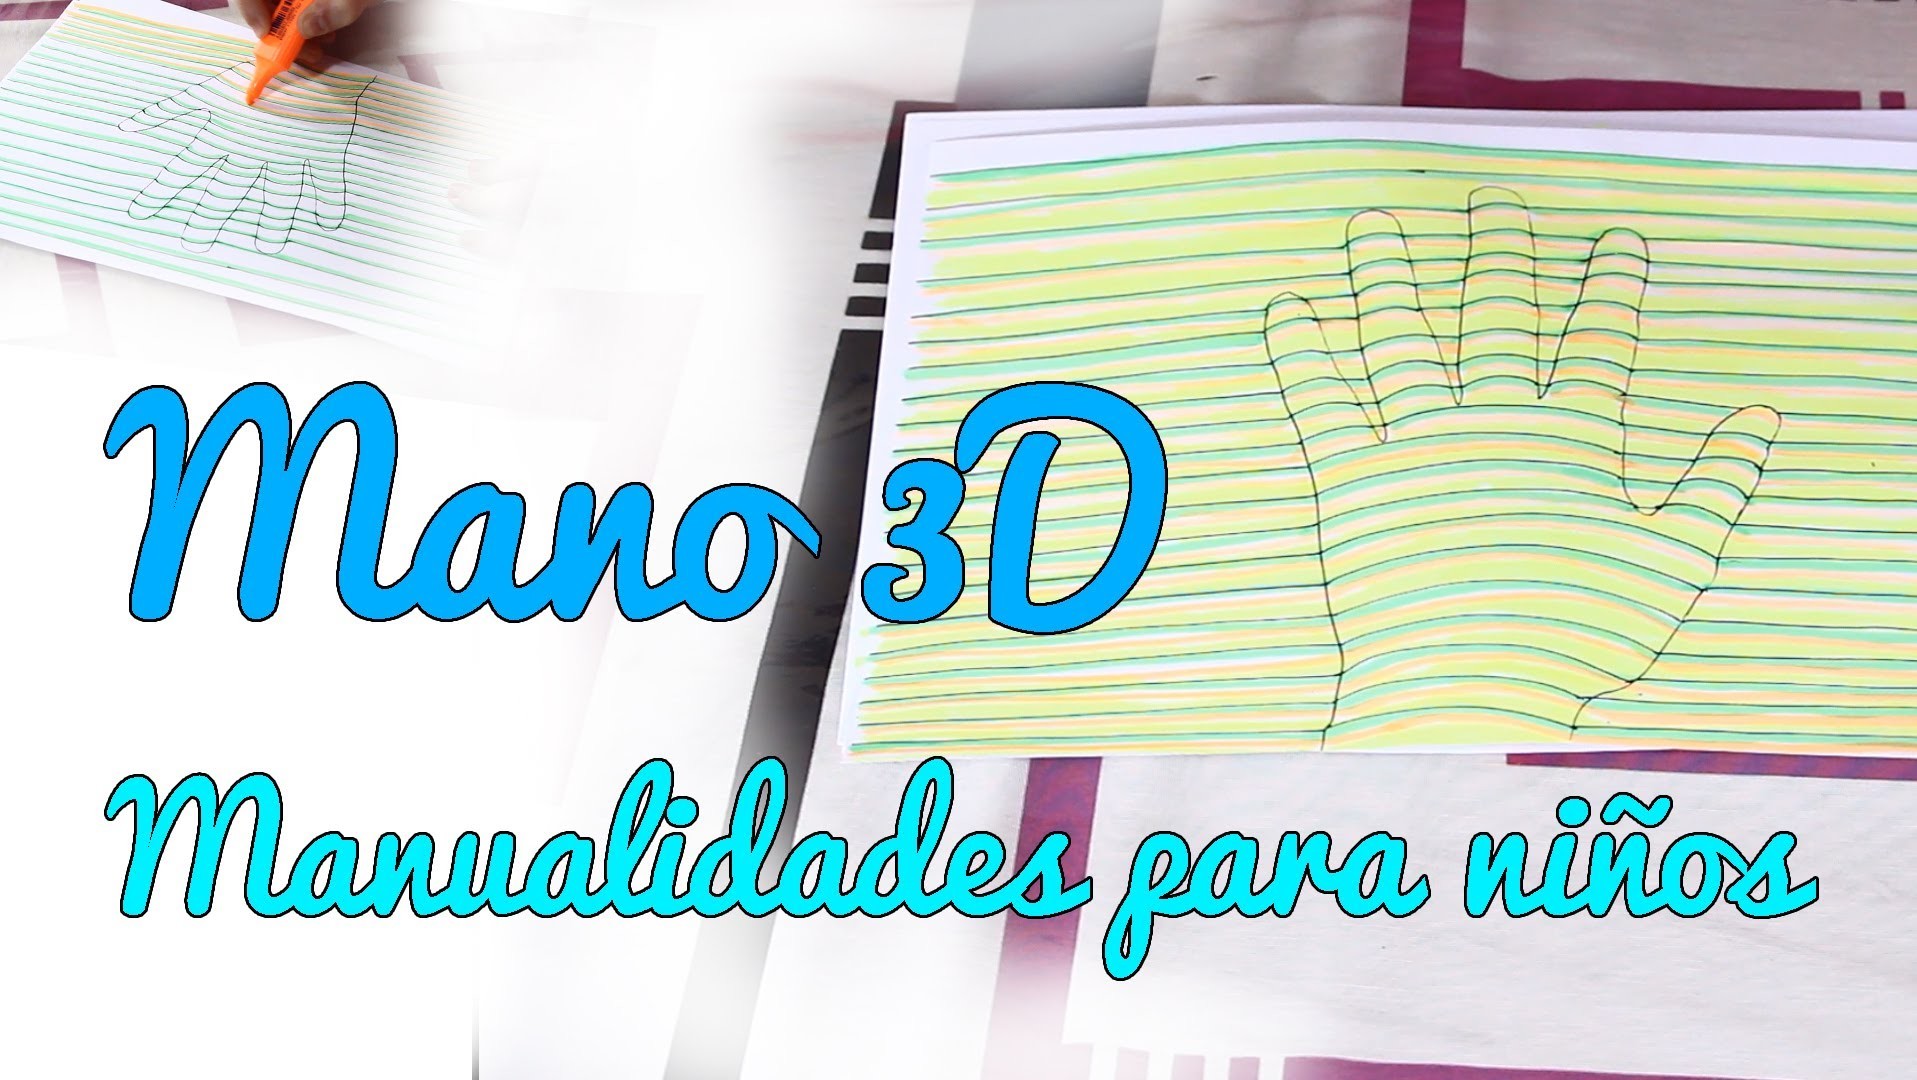 Cómo dibujar una mano en 3D - Manualidades sencillas para niños (Manualidades Fáciles)